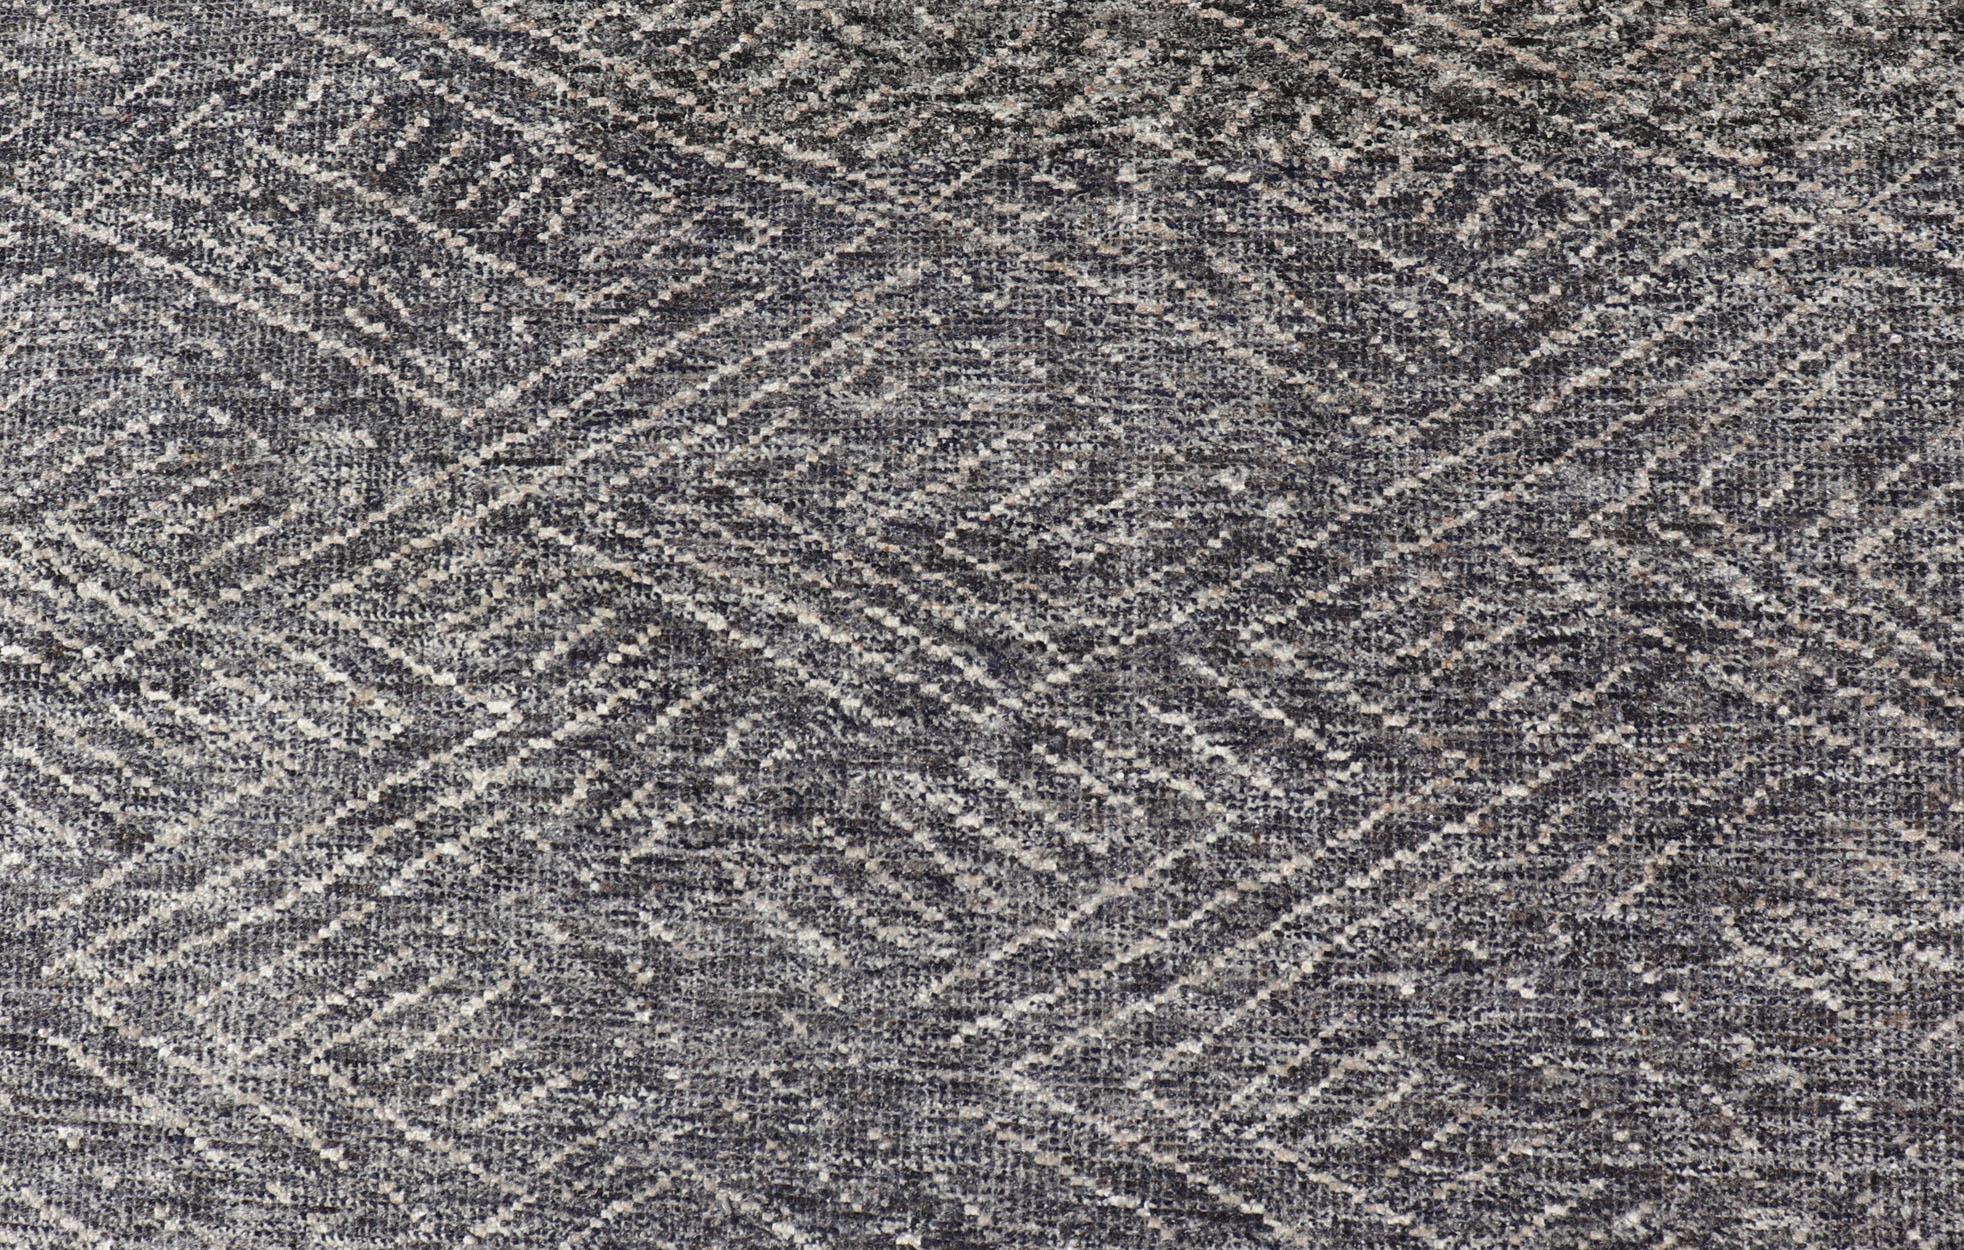 Mesures 6 x 9 

Ce tapis indien moderne présente un motif abstrait ressemblant vaguement à un motif hachuré. L'ensemble du tapis est rendu dans un coloris anthracite et crème clair. 

Pays d'origine : Inde ; Type : Moderne, Minimal ; Design :